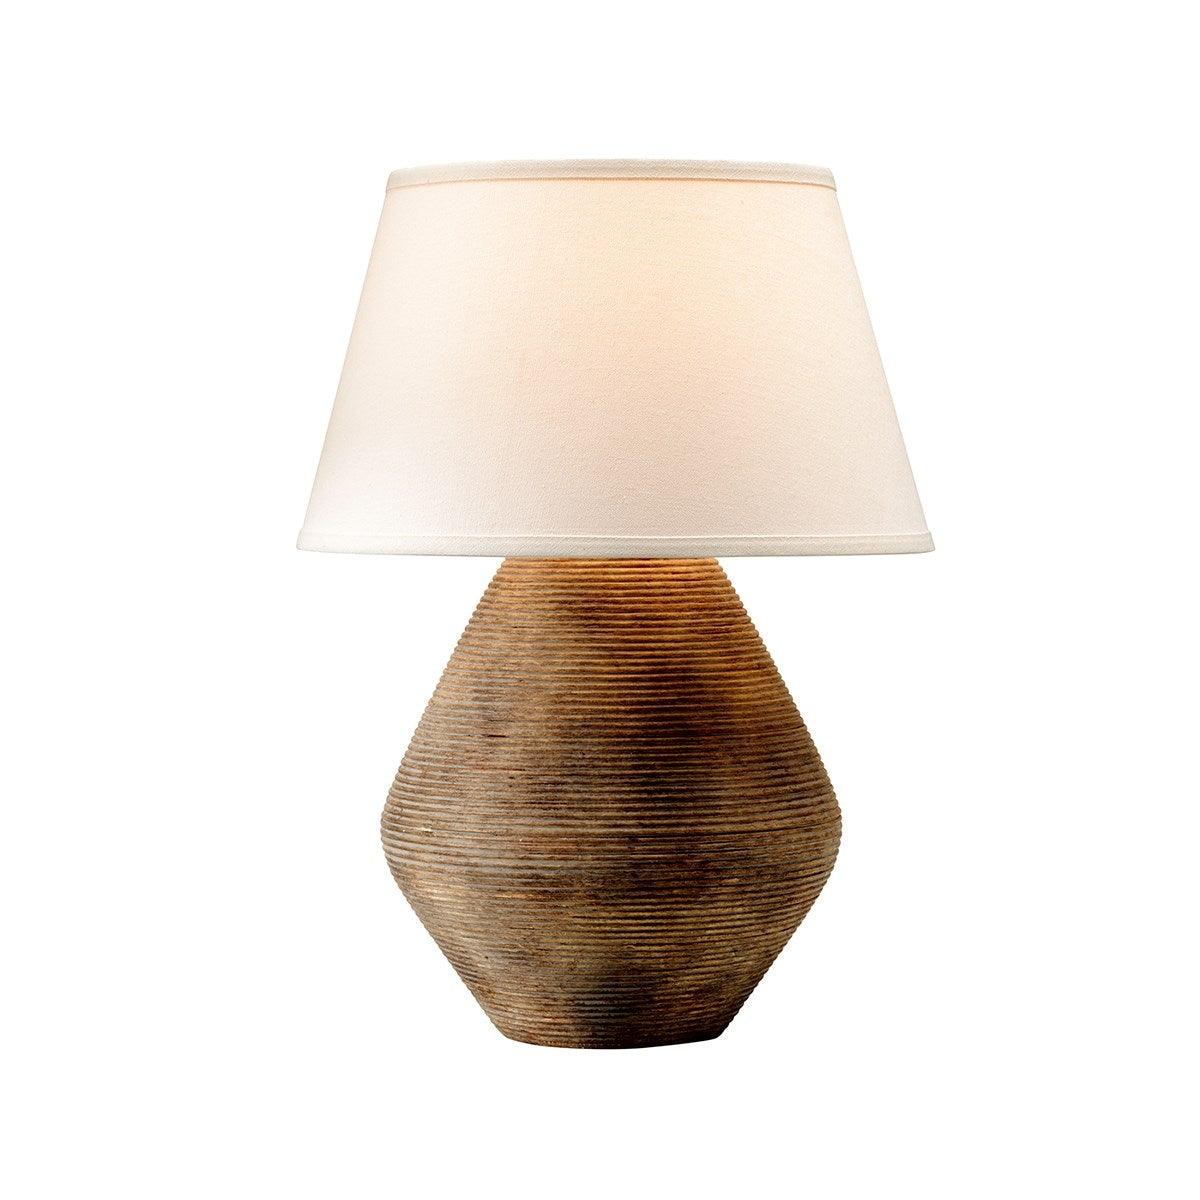 Calabria Rigida Table Lamp - Reimagine Designs - new, Table Lamp